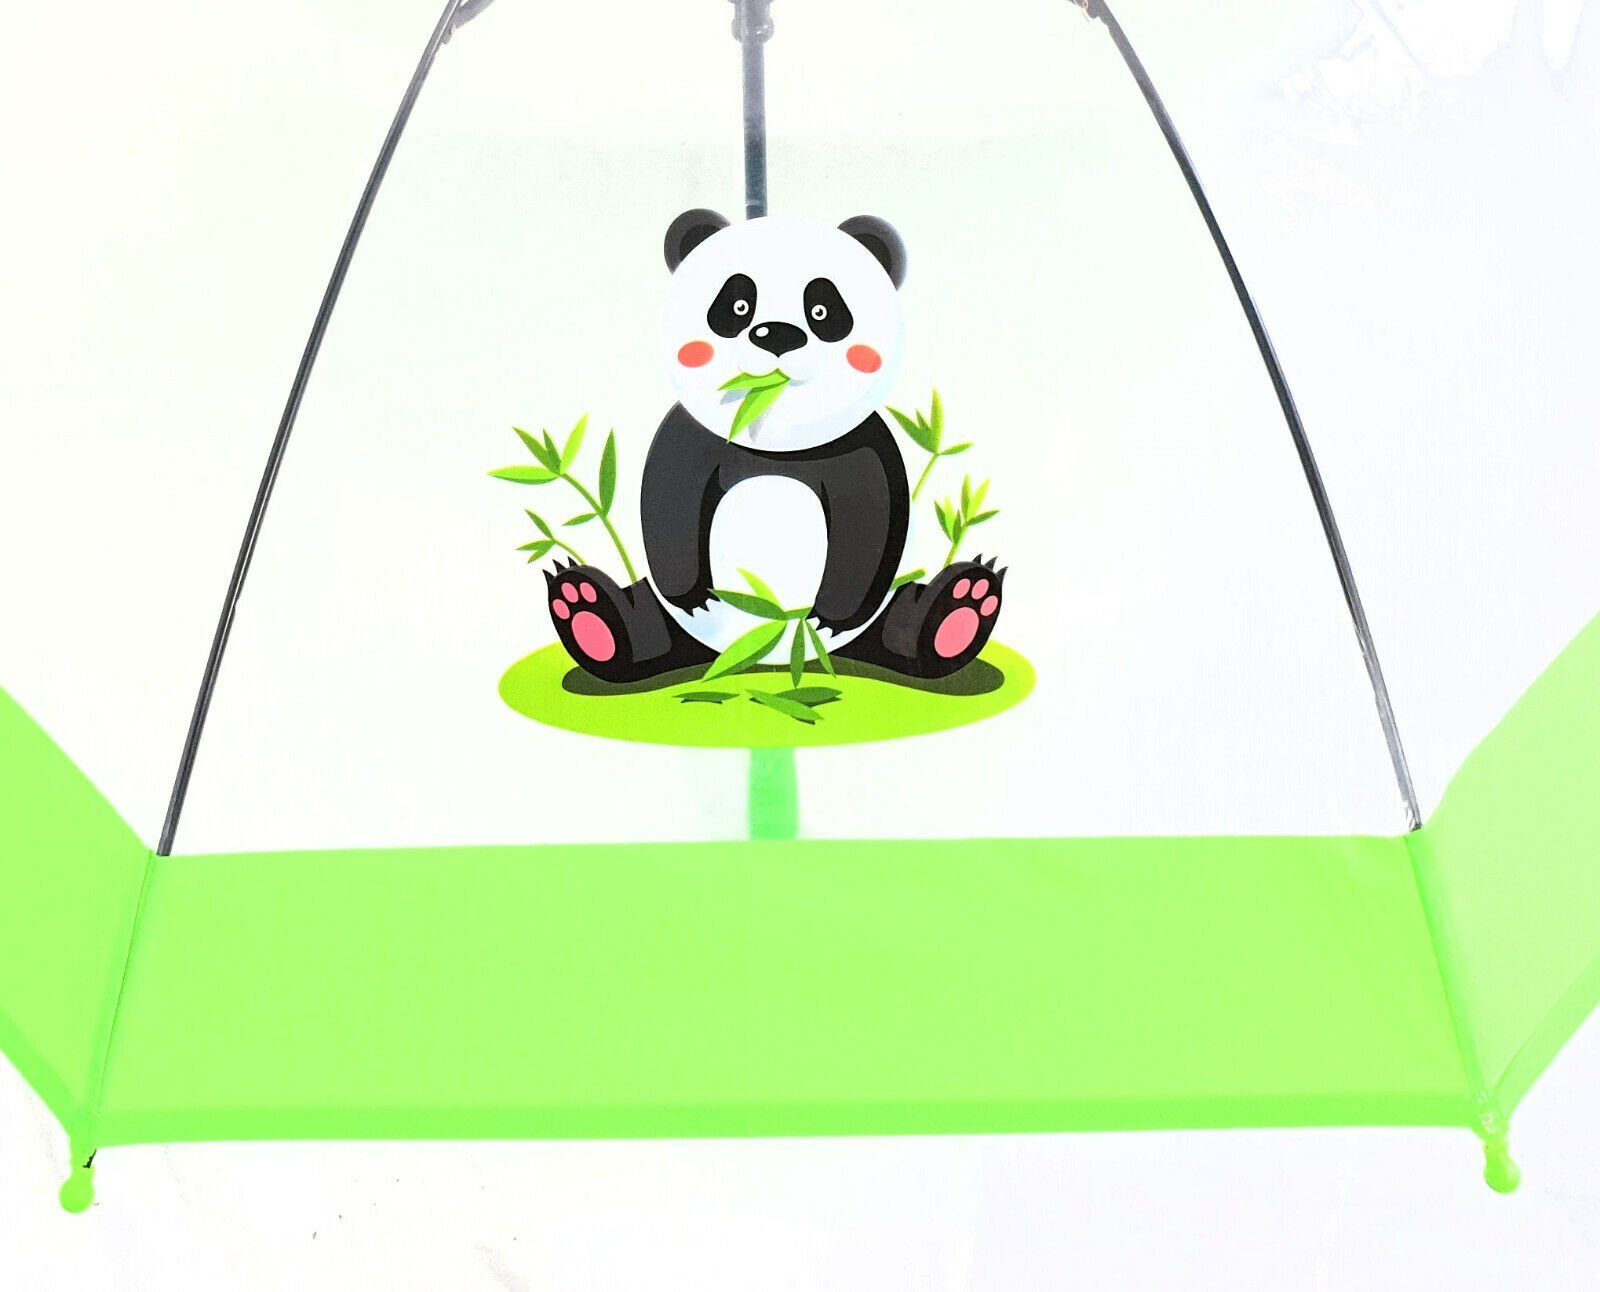 Dr. Neuser Stockregenschirm Kinder durchsichtig mit süßer Automatik, tranparent Panda Regenschirm transparent grün